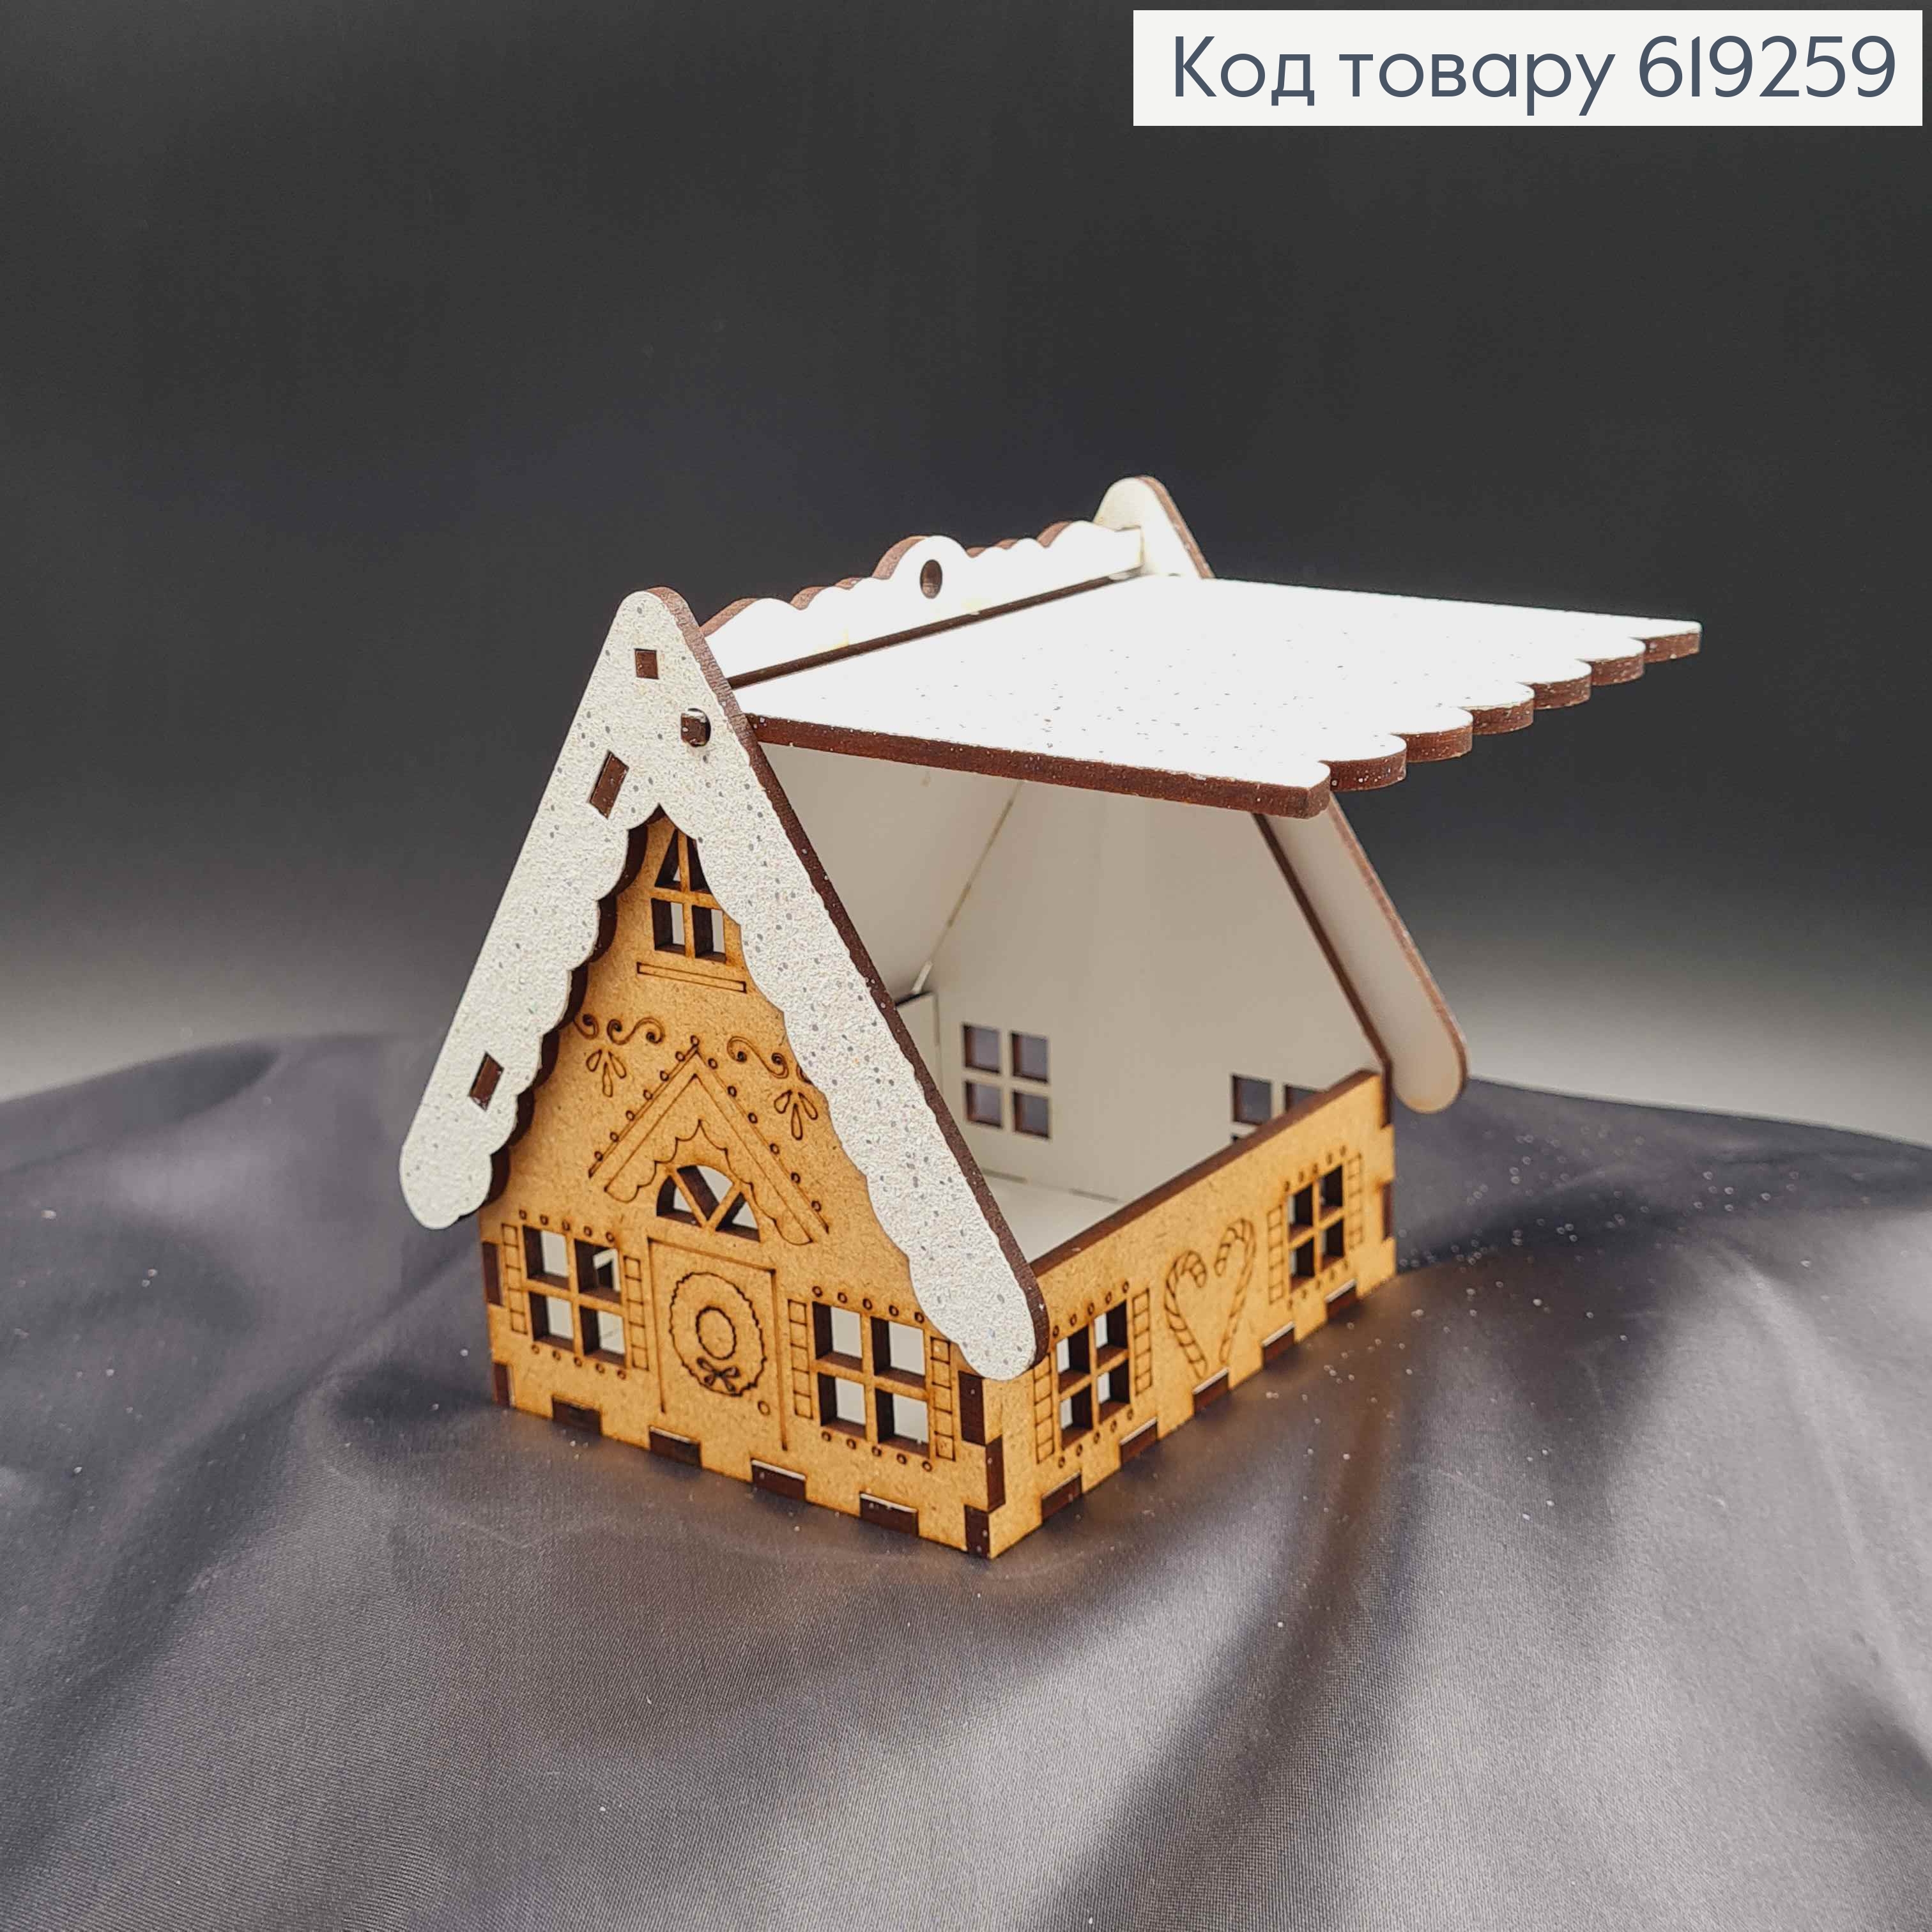 Дом деревянный с узором, крыша в блестках и открывается, 9,5*10см, Украина. 619259 фото 2